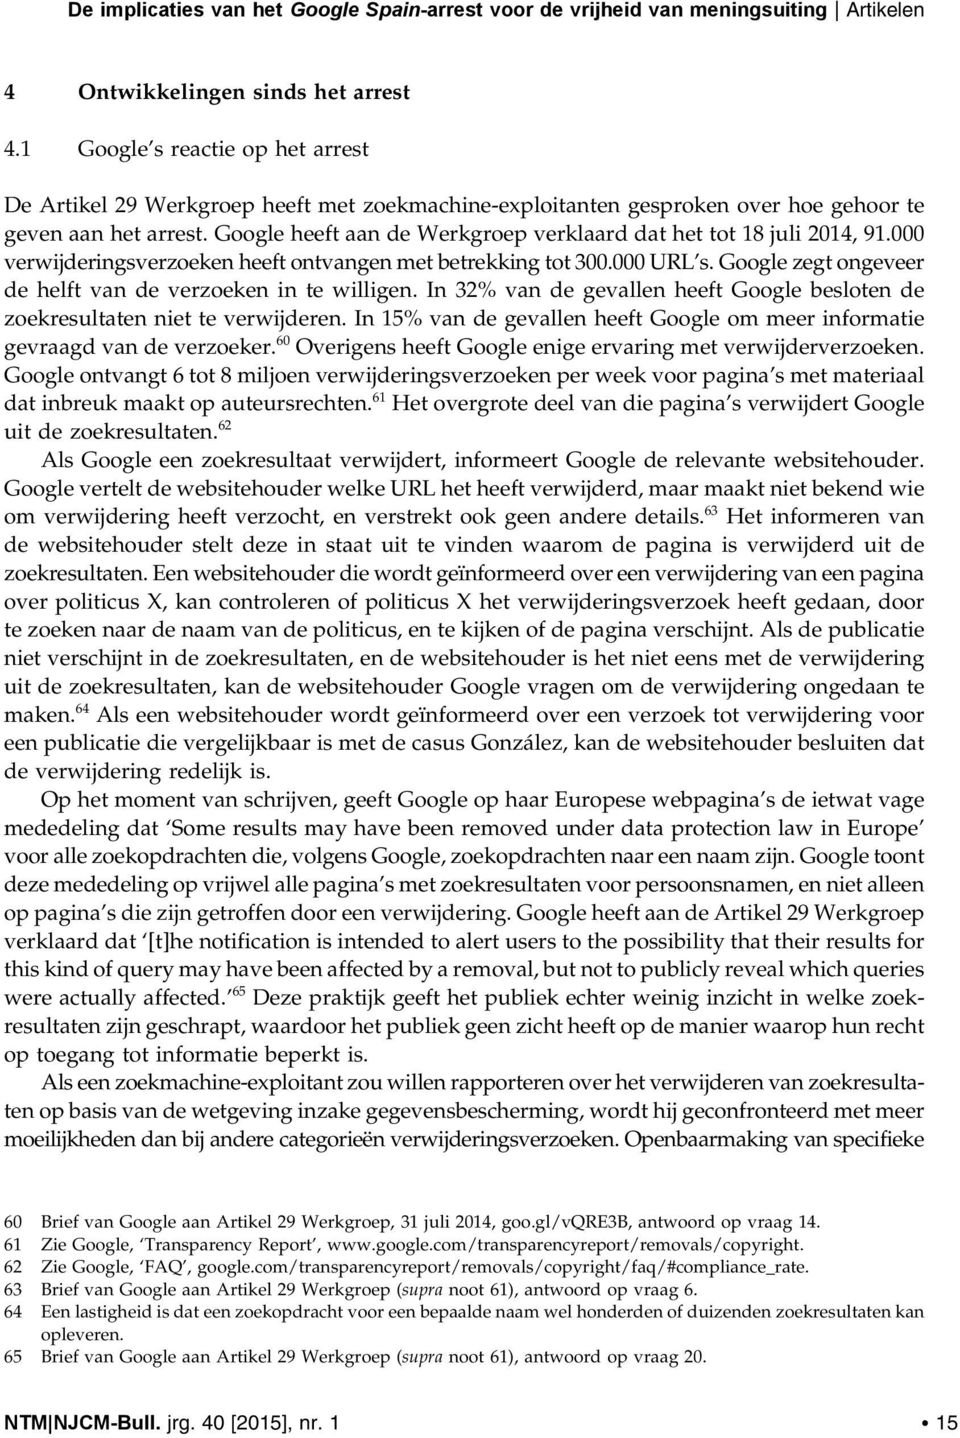 Google heeft aan de Werkgroep verklaard dat het tot 18 juli 2014, 91.000 verwijderingsverzoeken heeft ontvangen met betrekking tot 300.000 URL s.